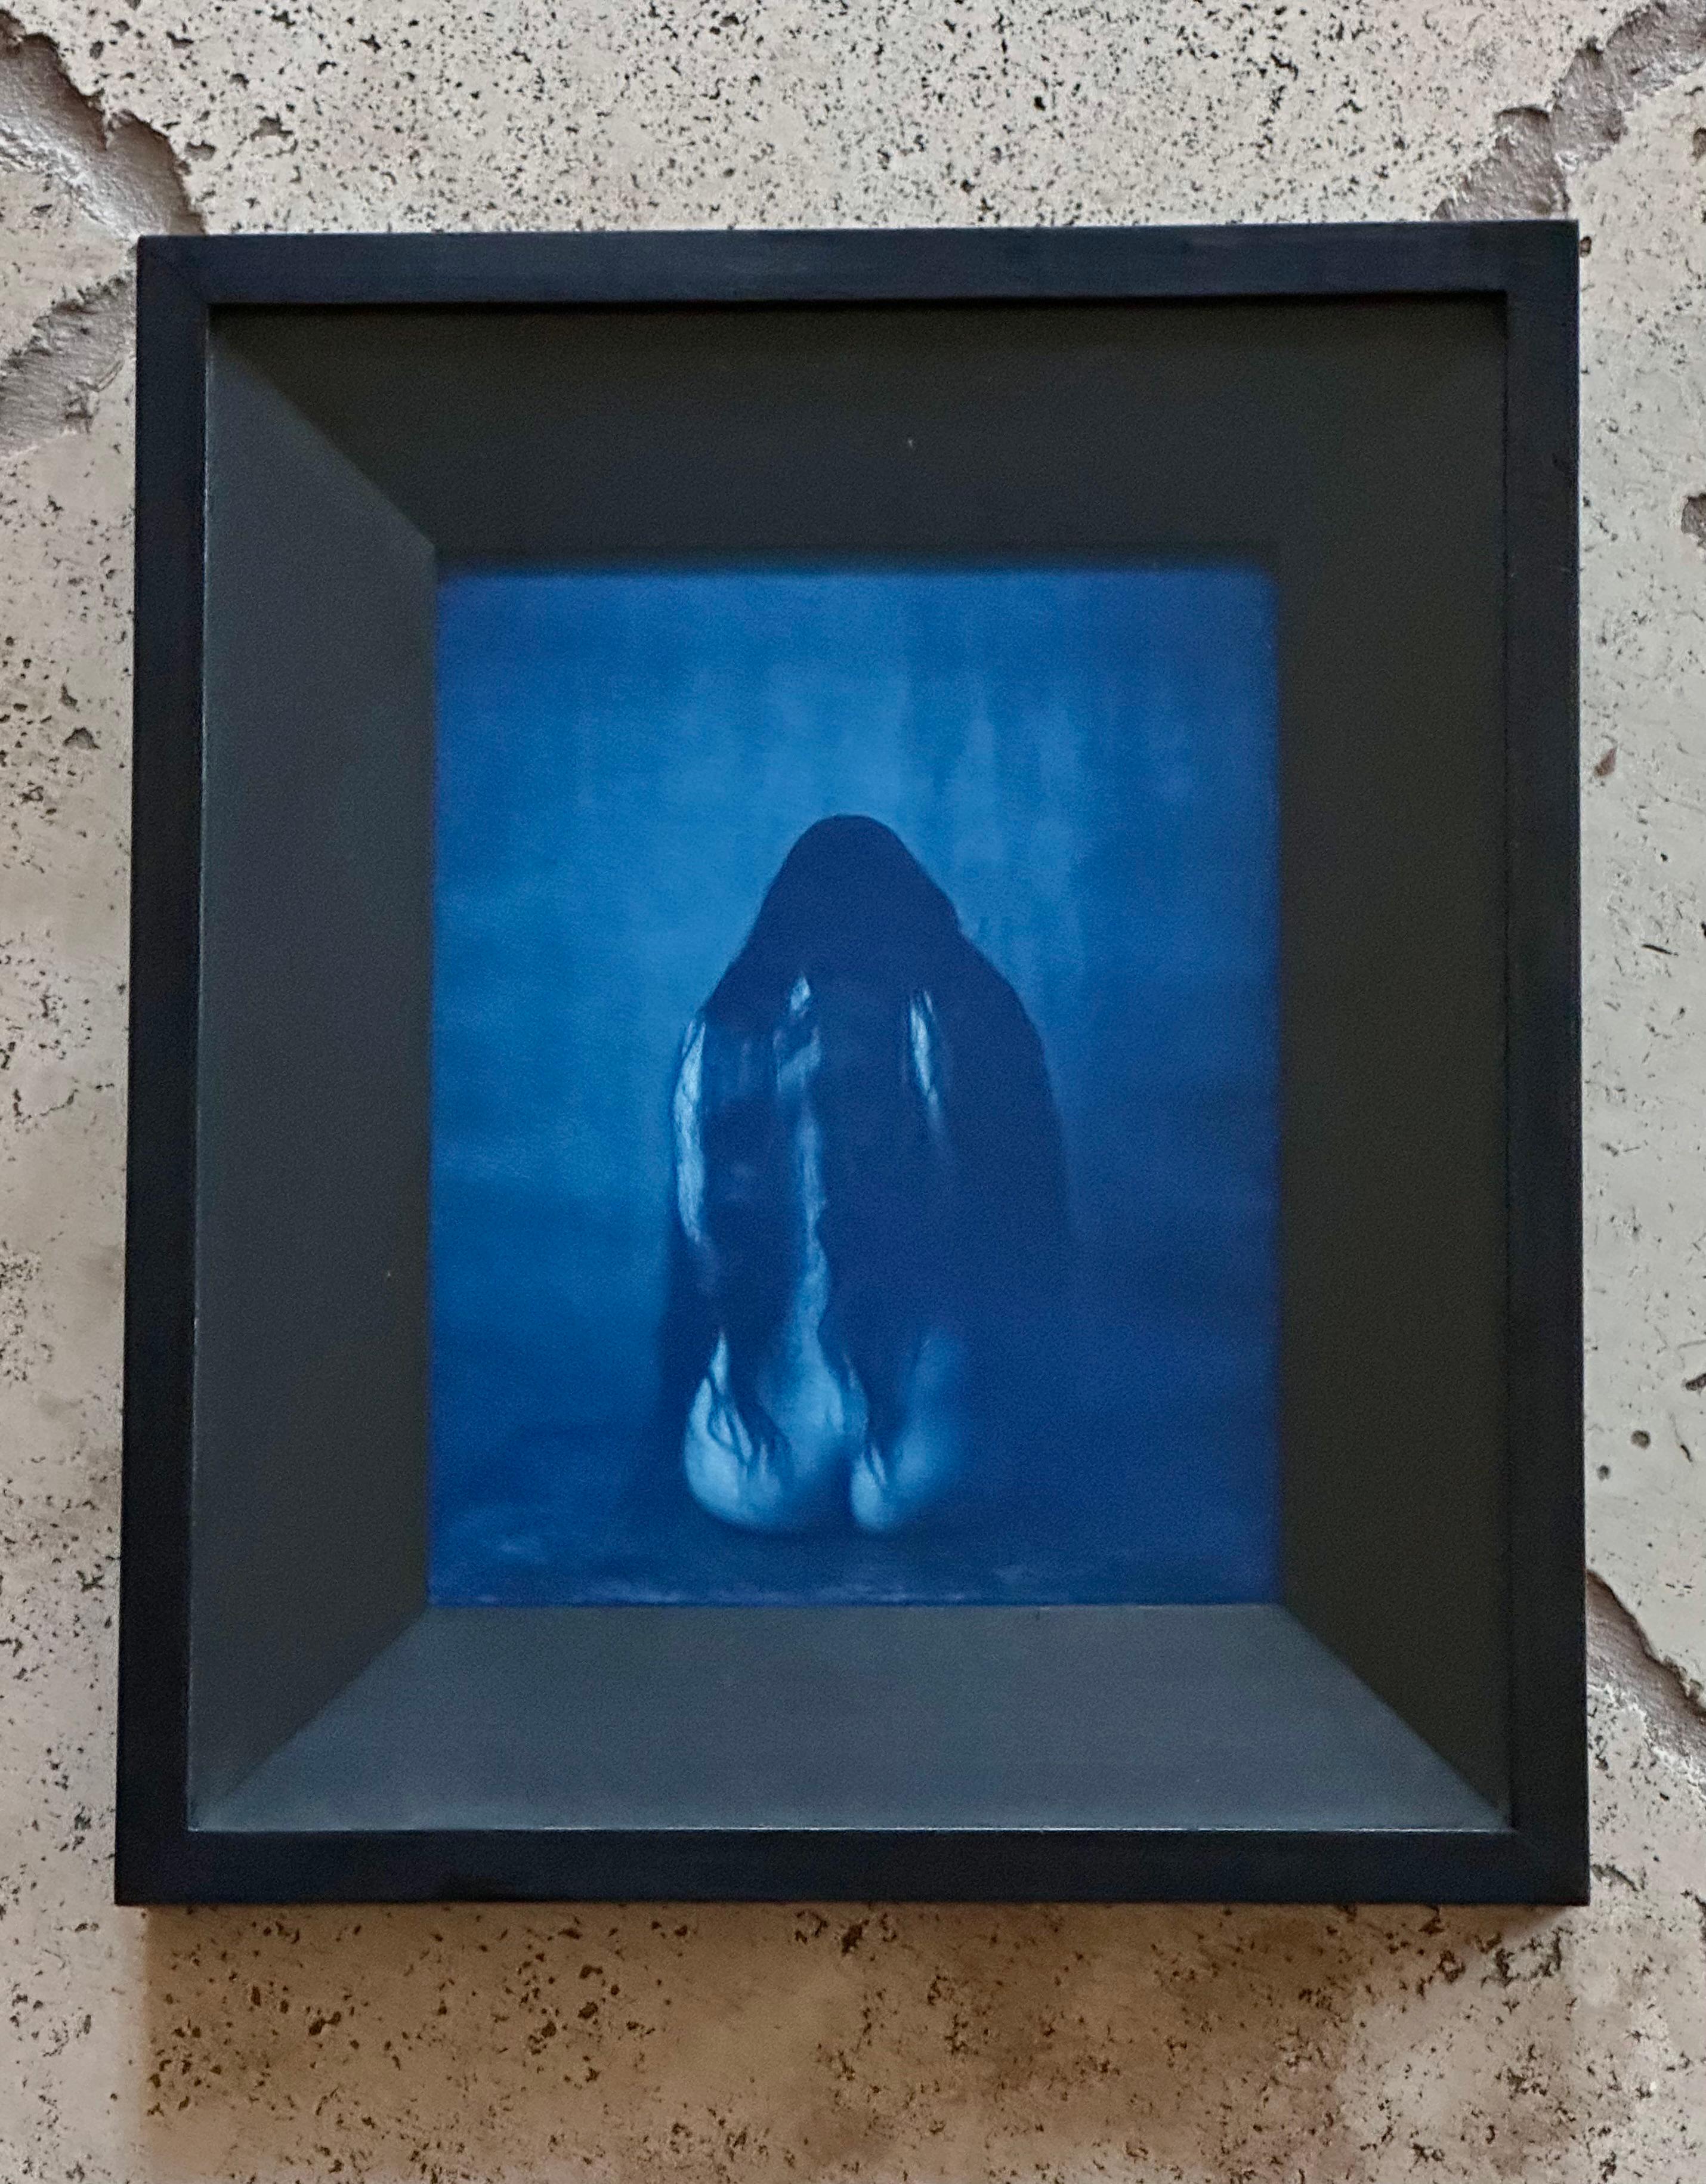 Artistics : John Patrick Dugdale (New York, né en 1960)
Titre : Margie
Médium : Cyanotype
Année : 1996
Edition : numéro 2/10
Mesures : Famed H 9